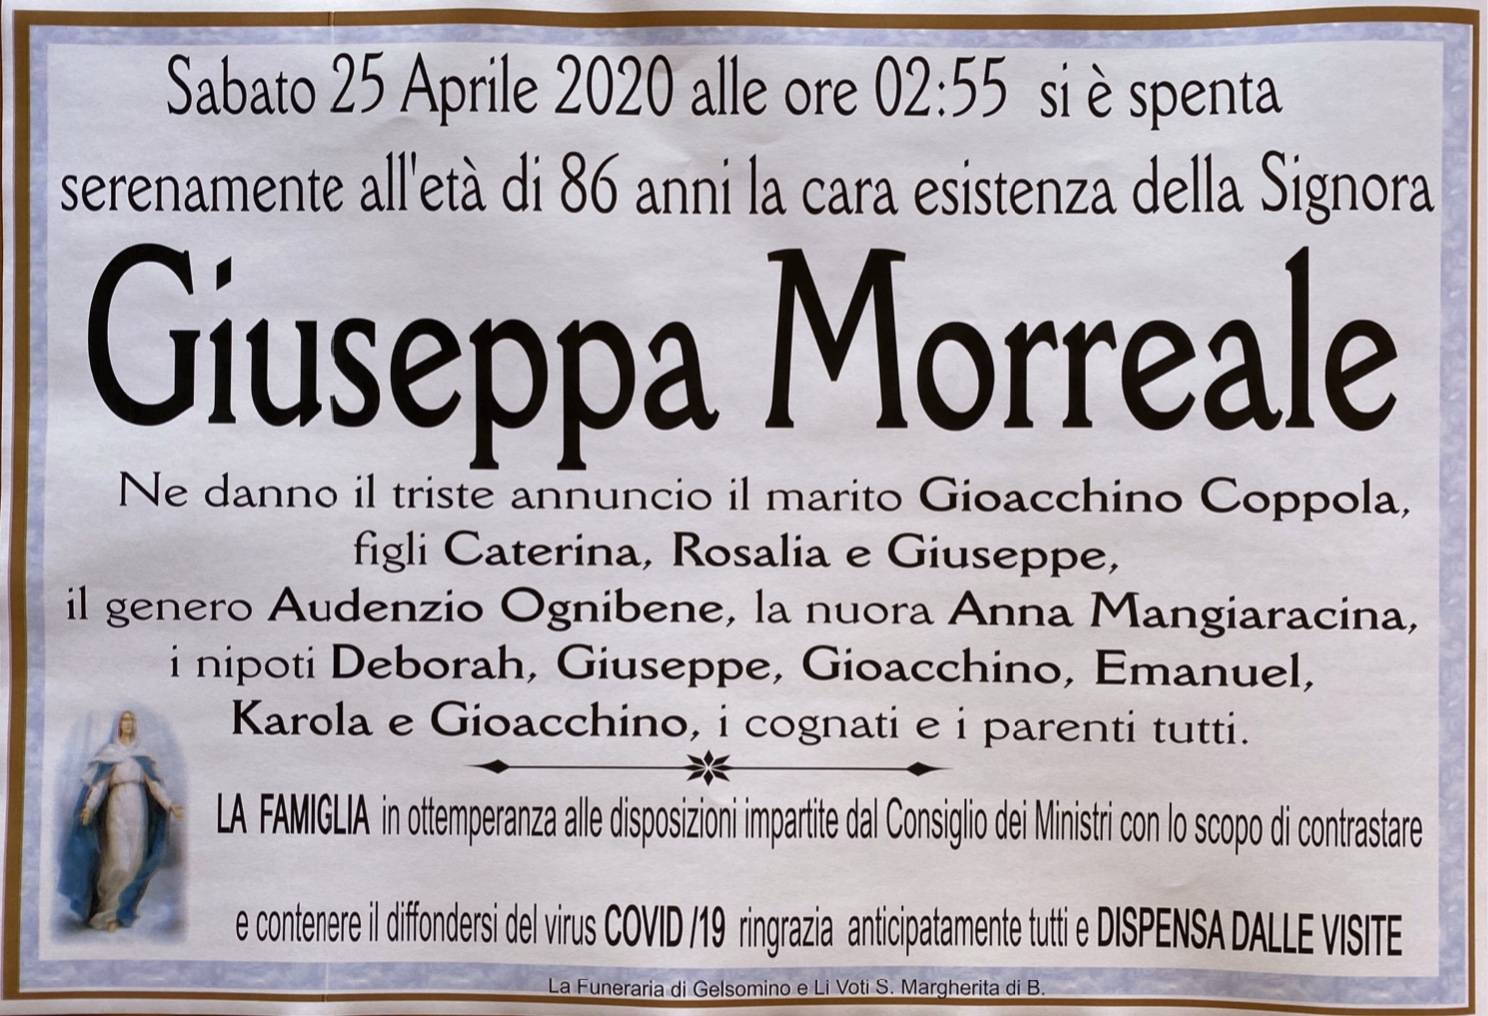 Giuseppa Morreale